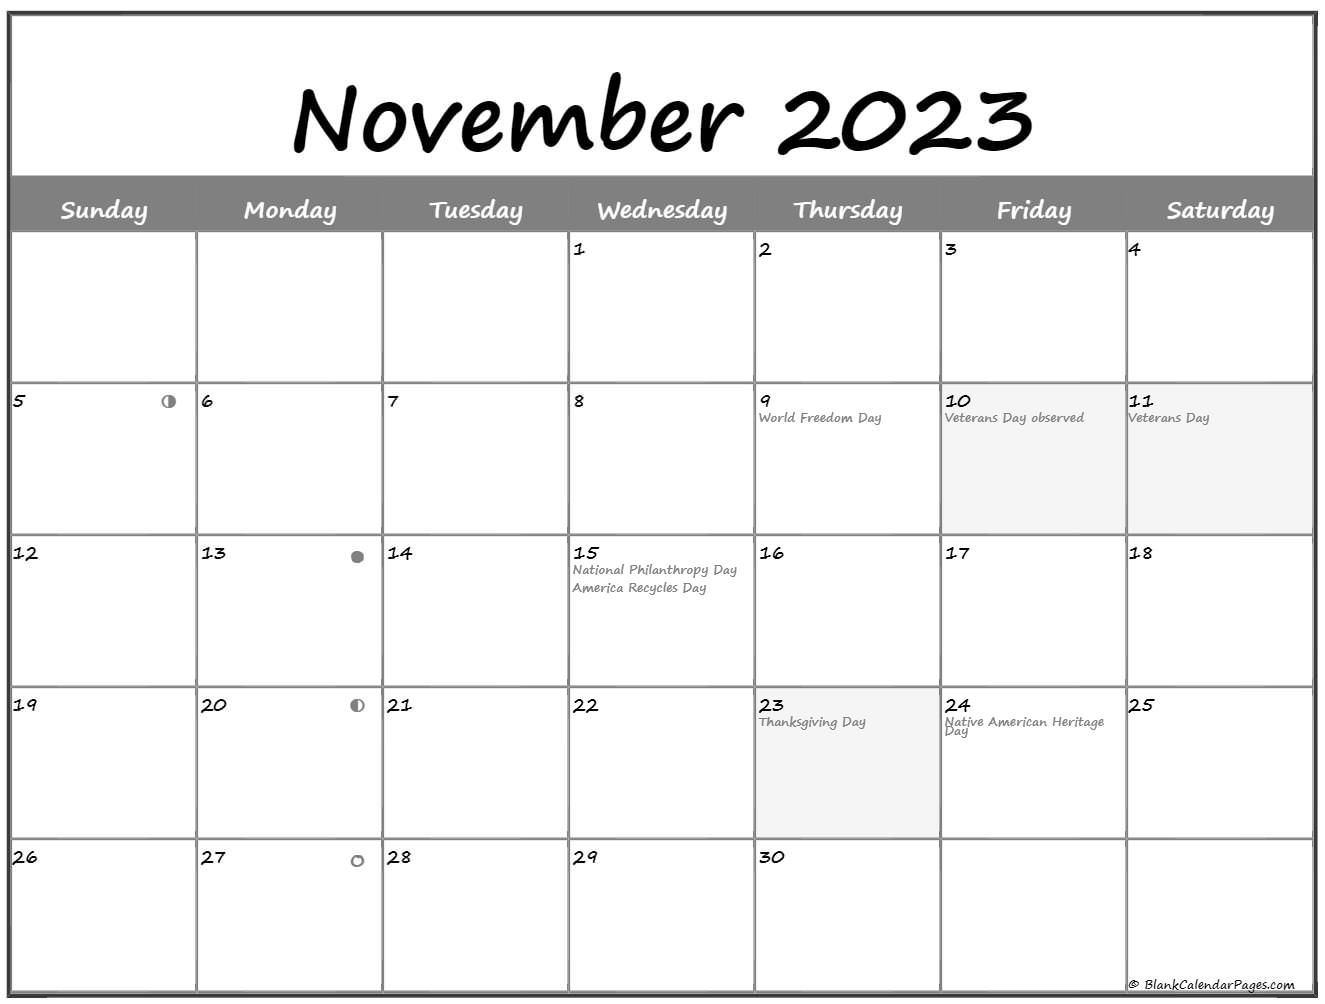 November 2023 Lunar Calendar Moon Phase Calendar